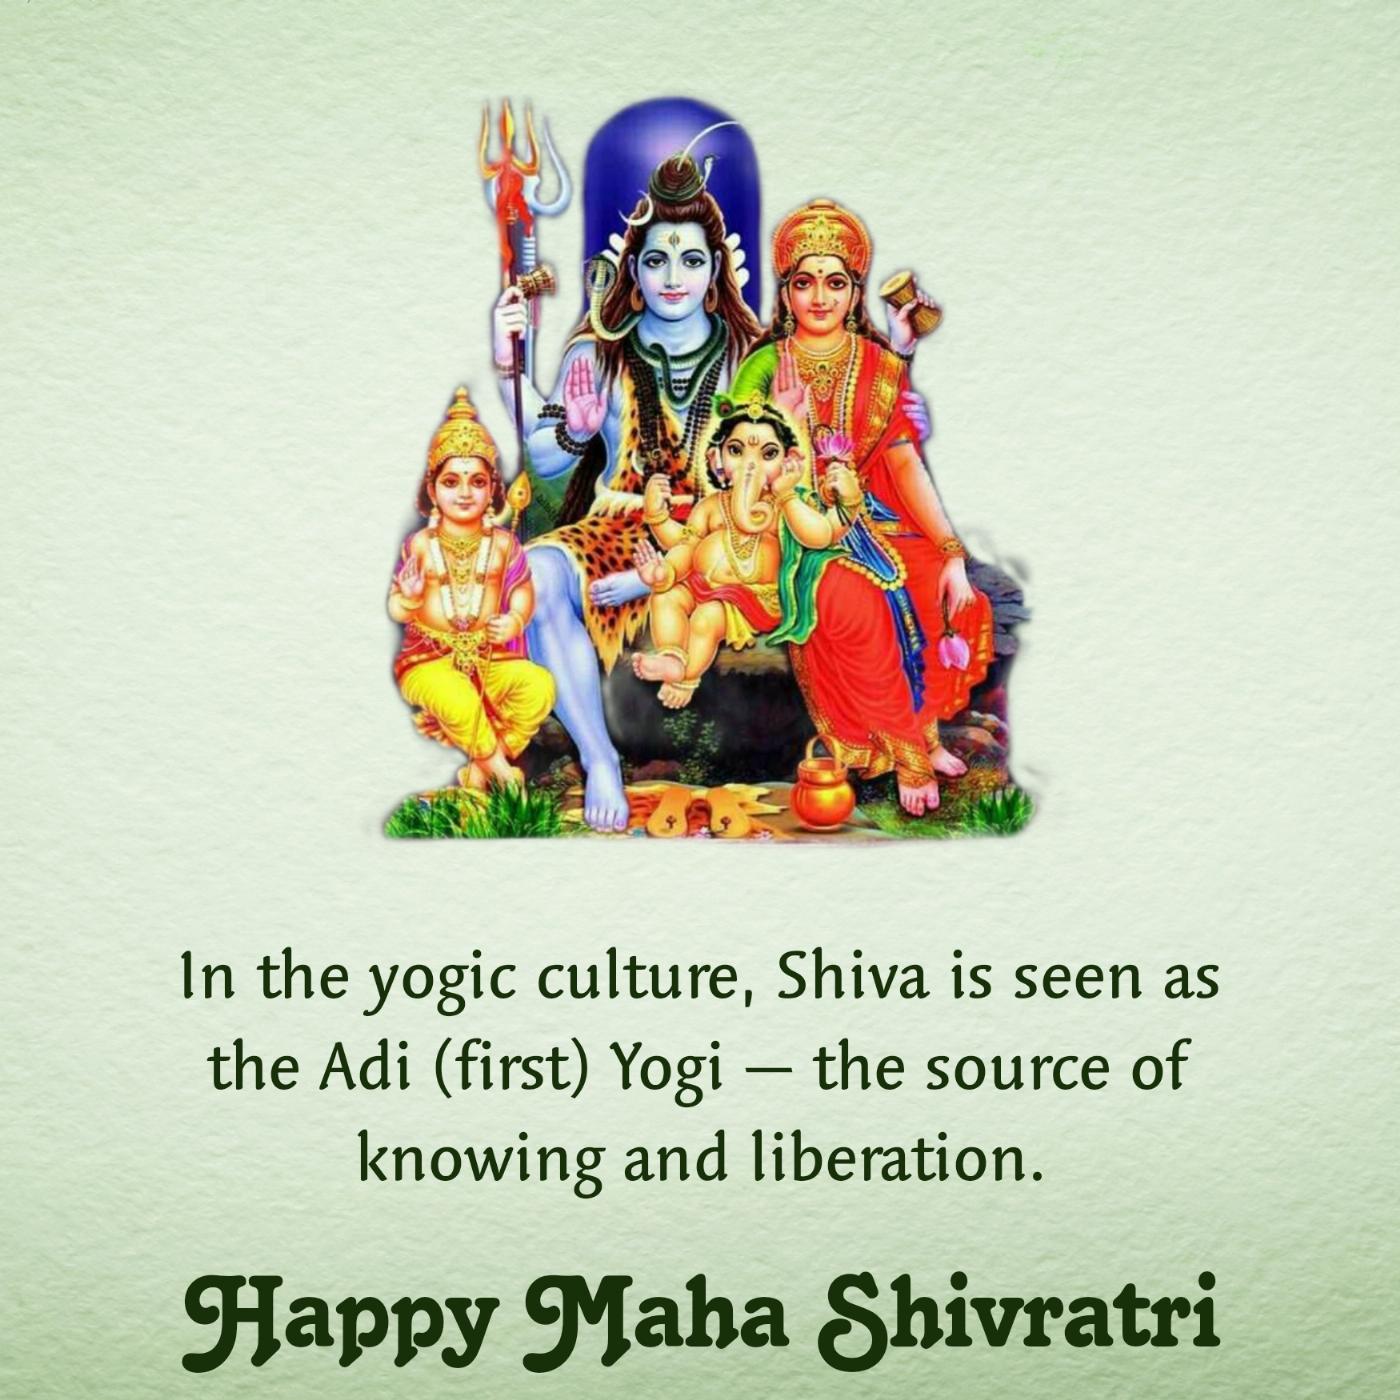 In the yogic culture Shiva is seen as the Adi (first) Yogi